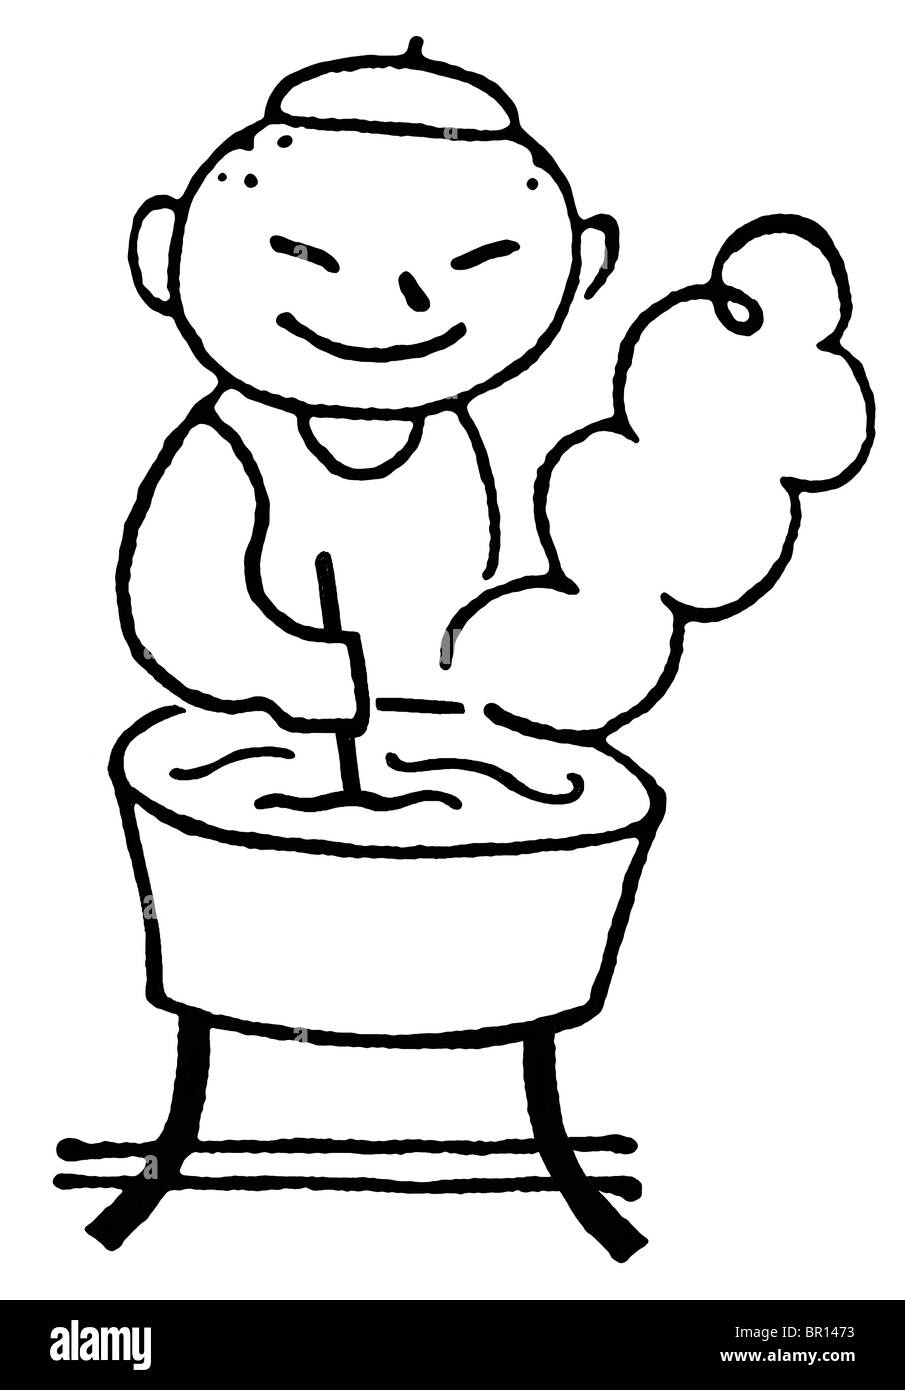 Eine schwarz-weiß Version von einem Cartoon-Stil eines Mannes, die Wäsche von hand zeichnen Stockfoto